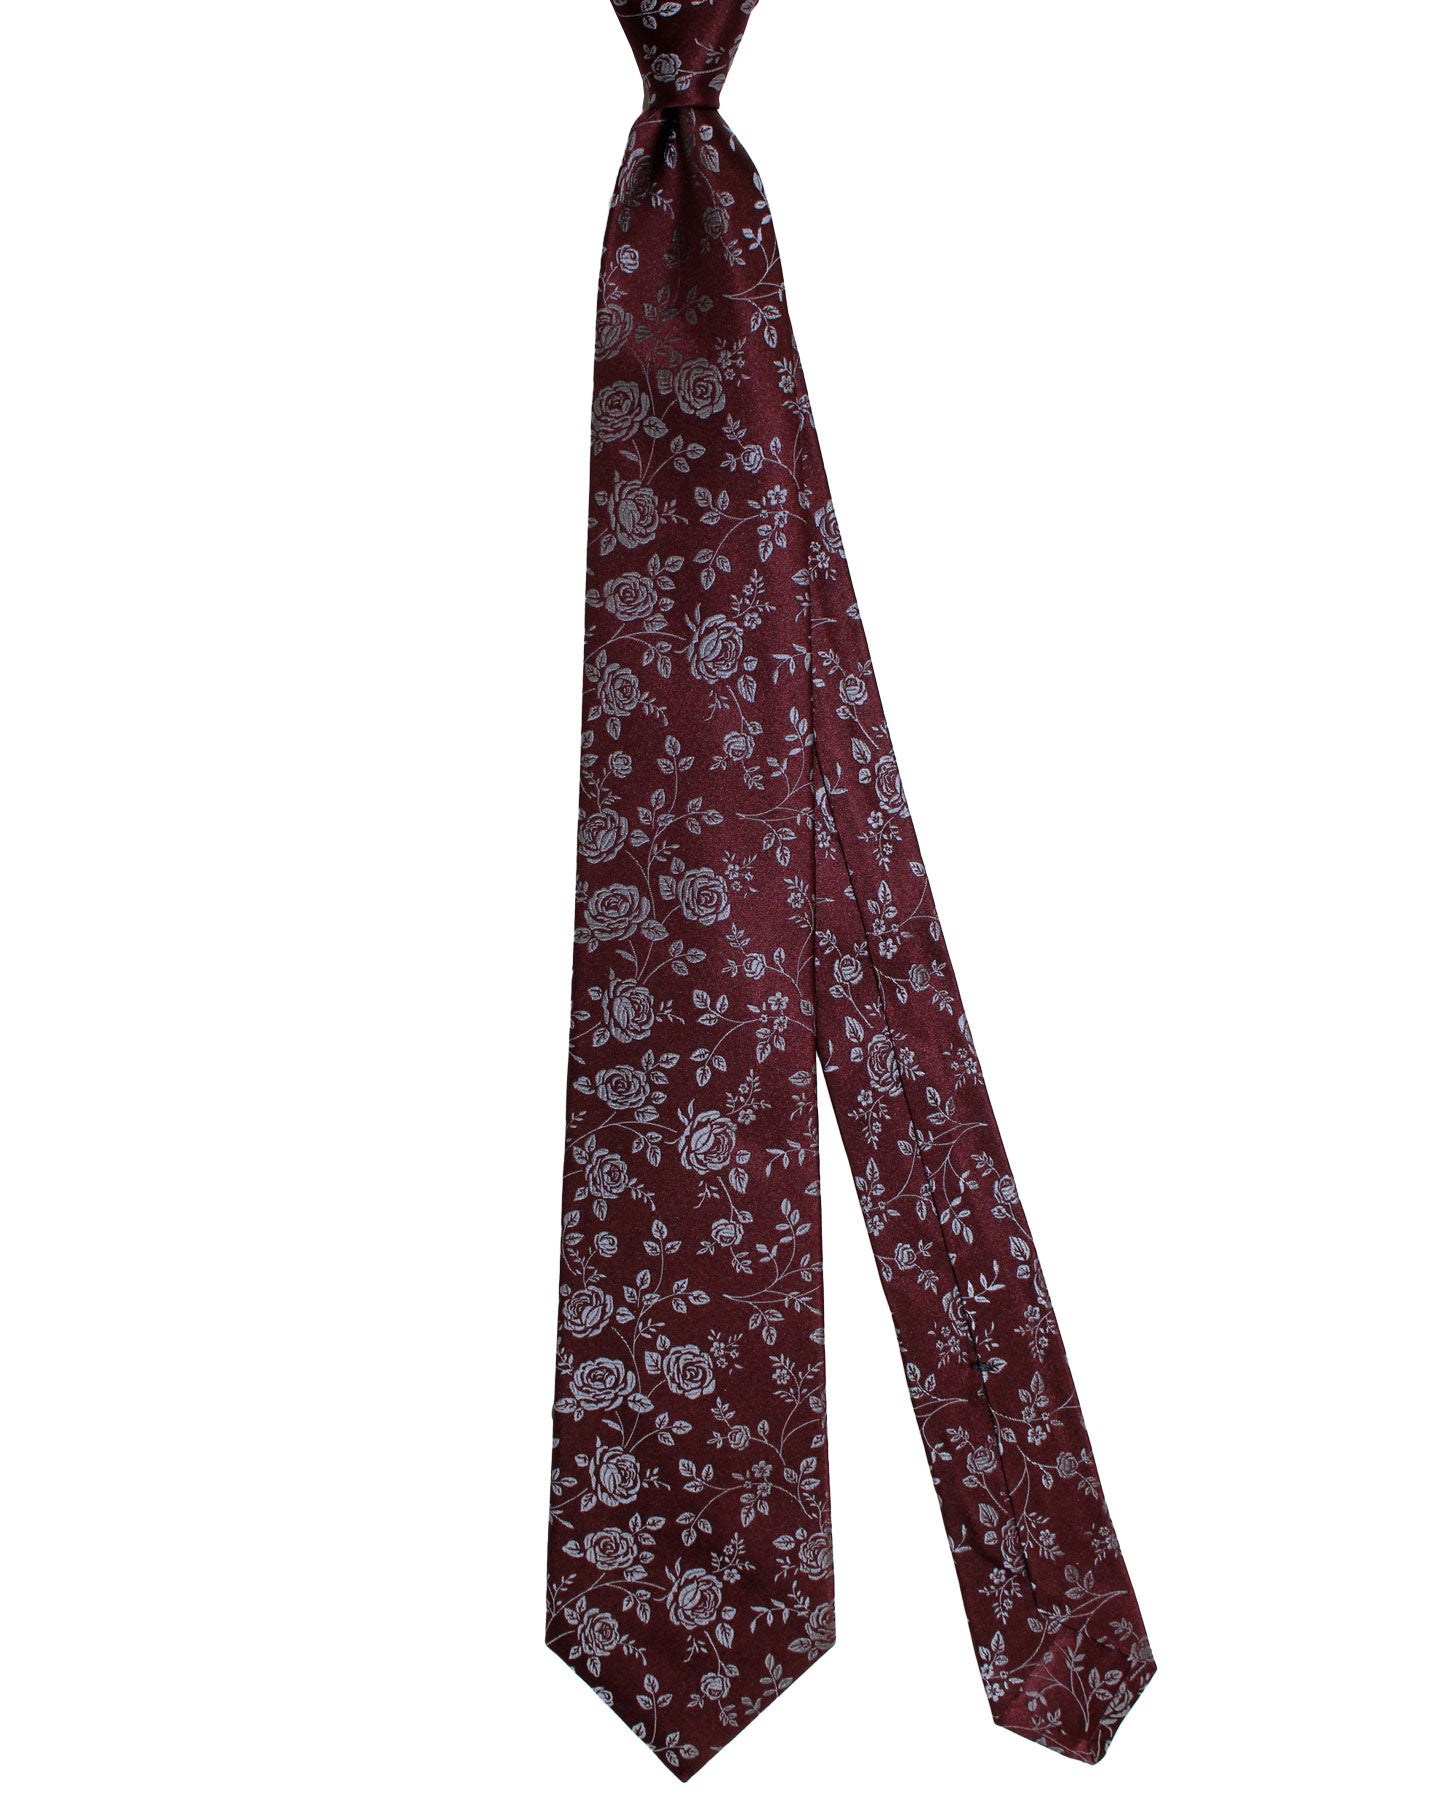 Kiton Silk Tie Maroon Gray Floral Design - Sevenfold Necktie